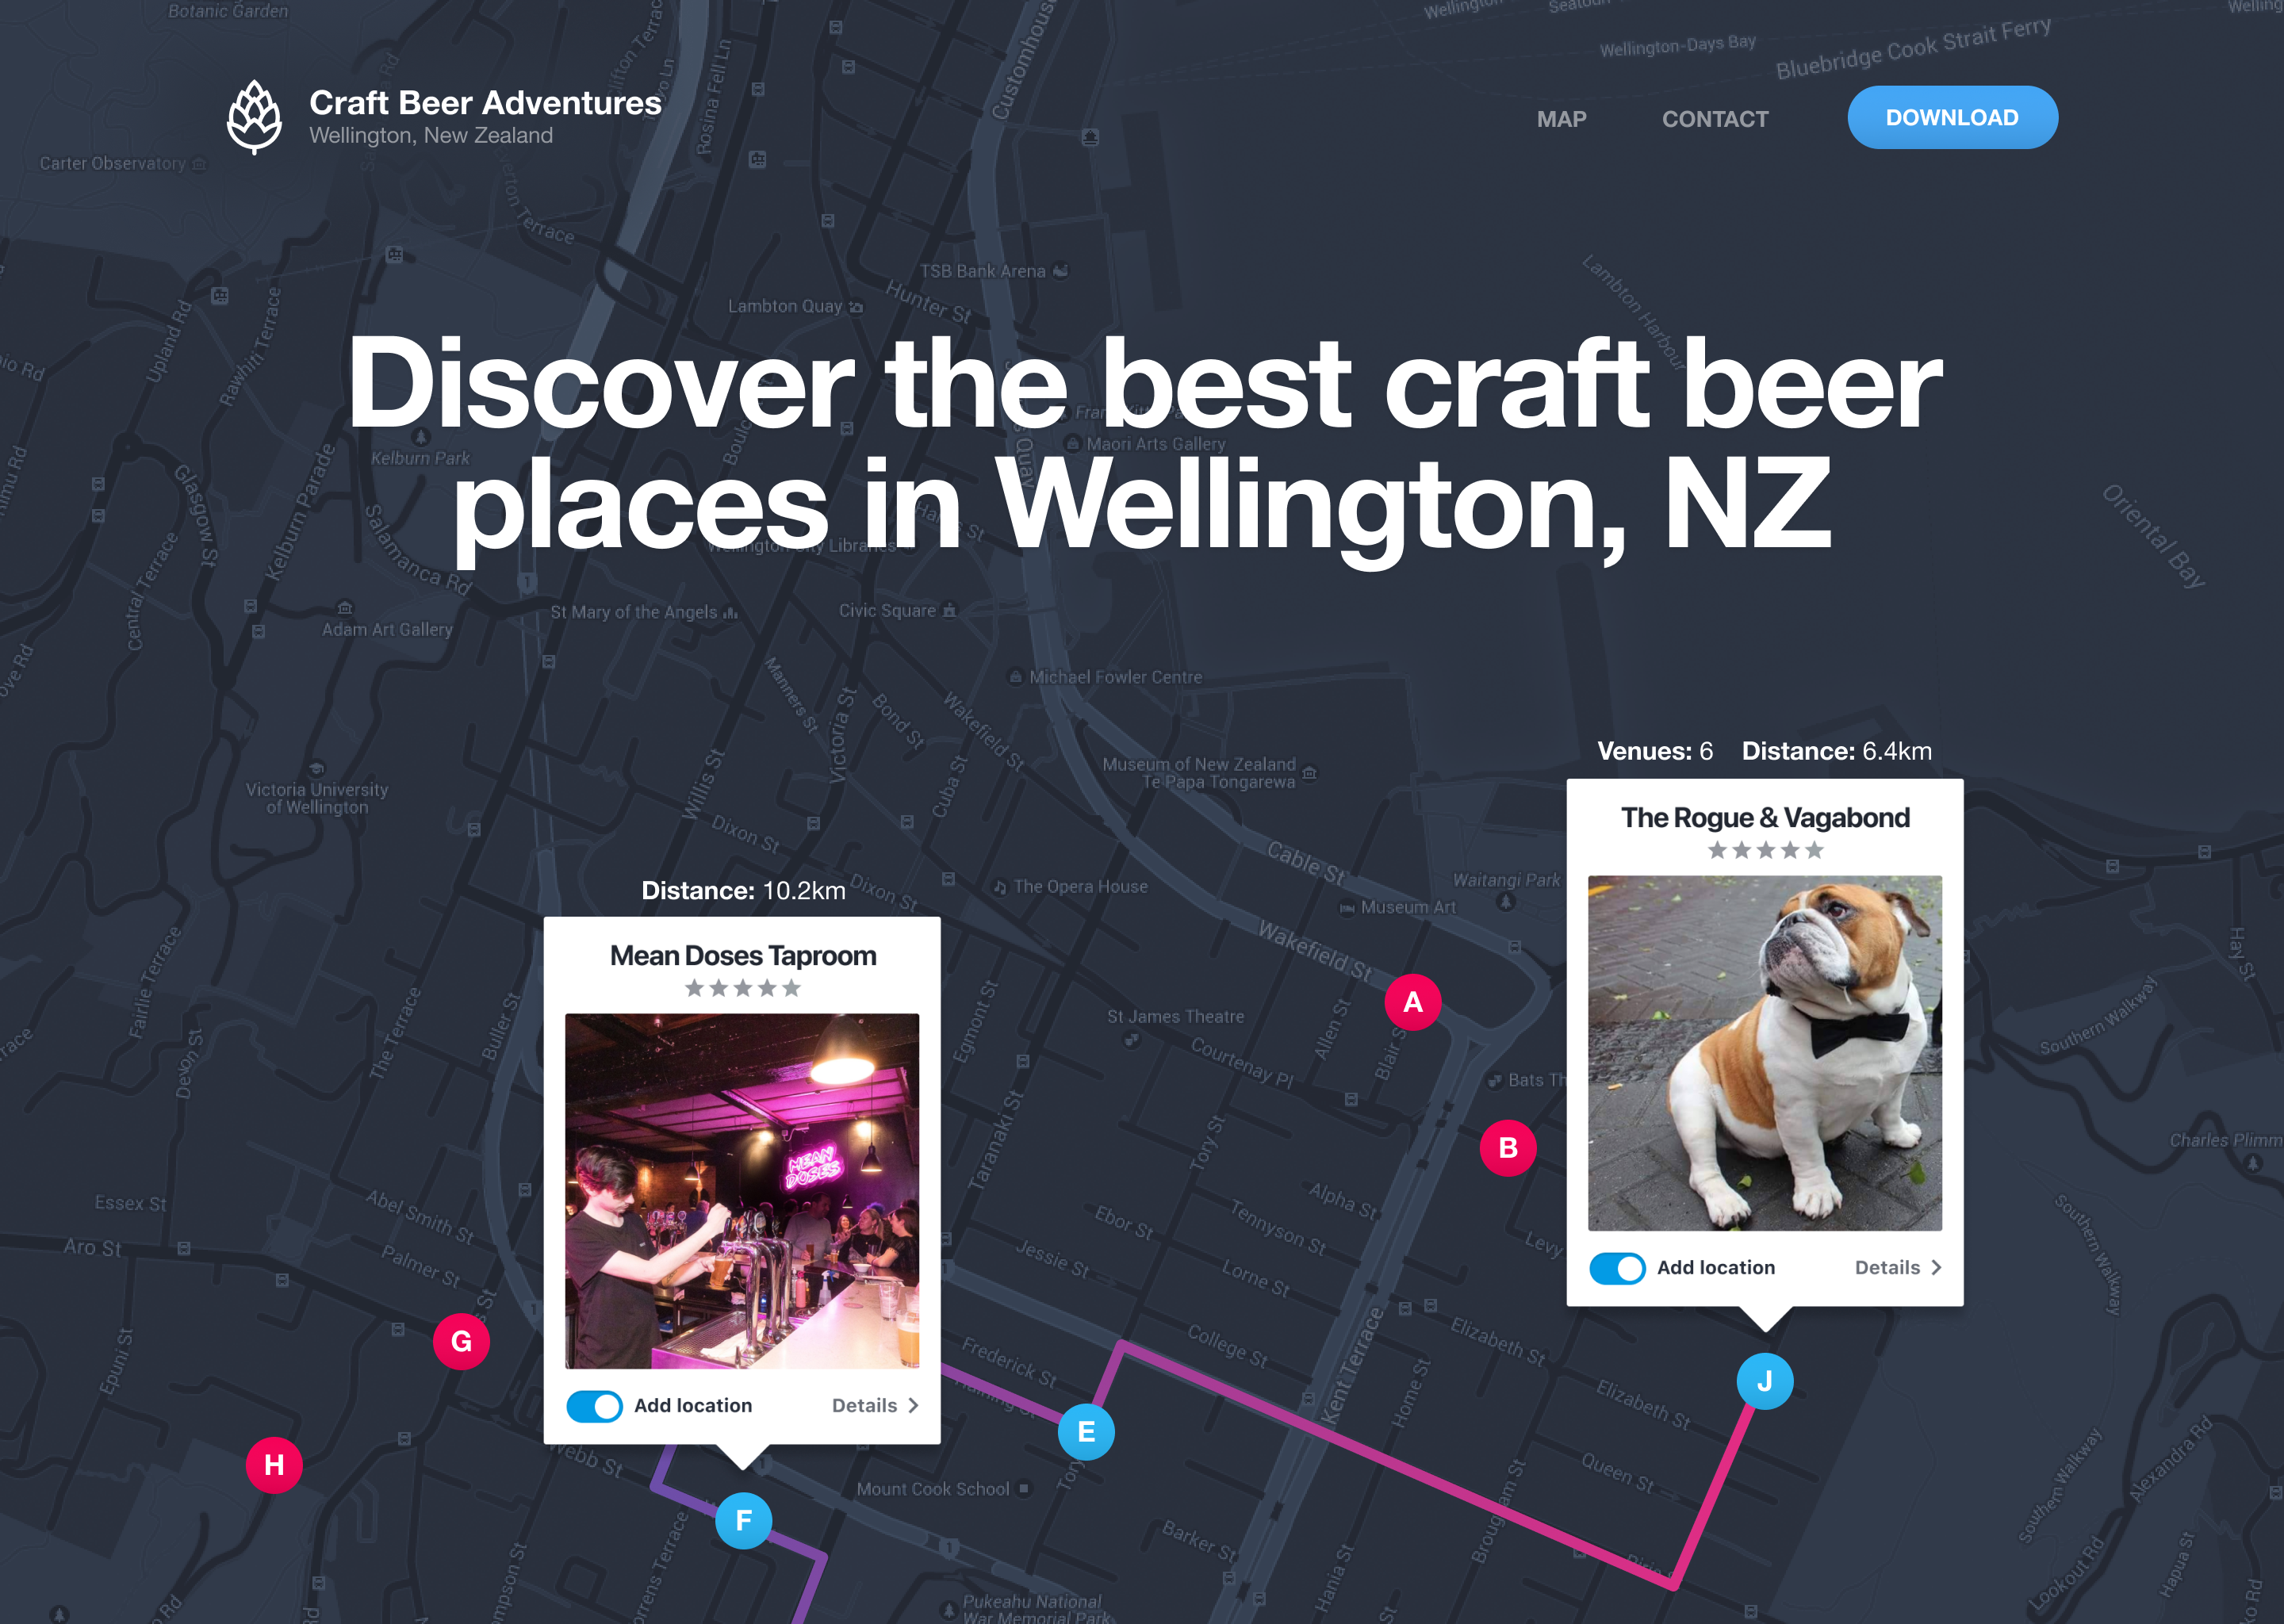 wellington-craft-beer-iphone-app-landing-page